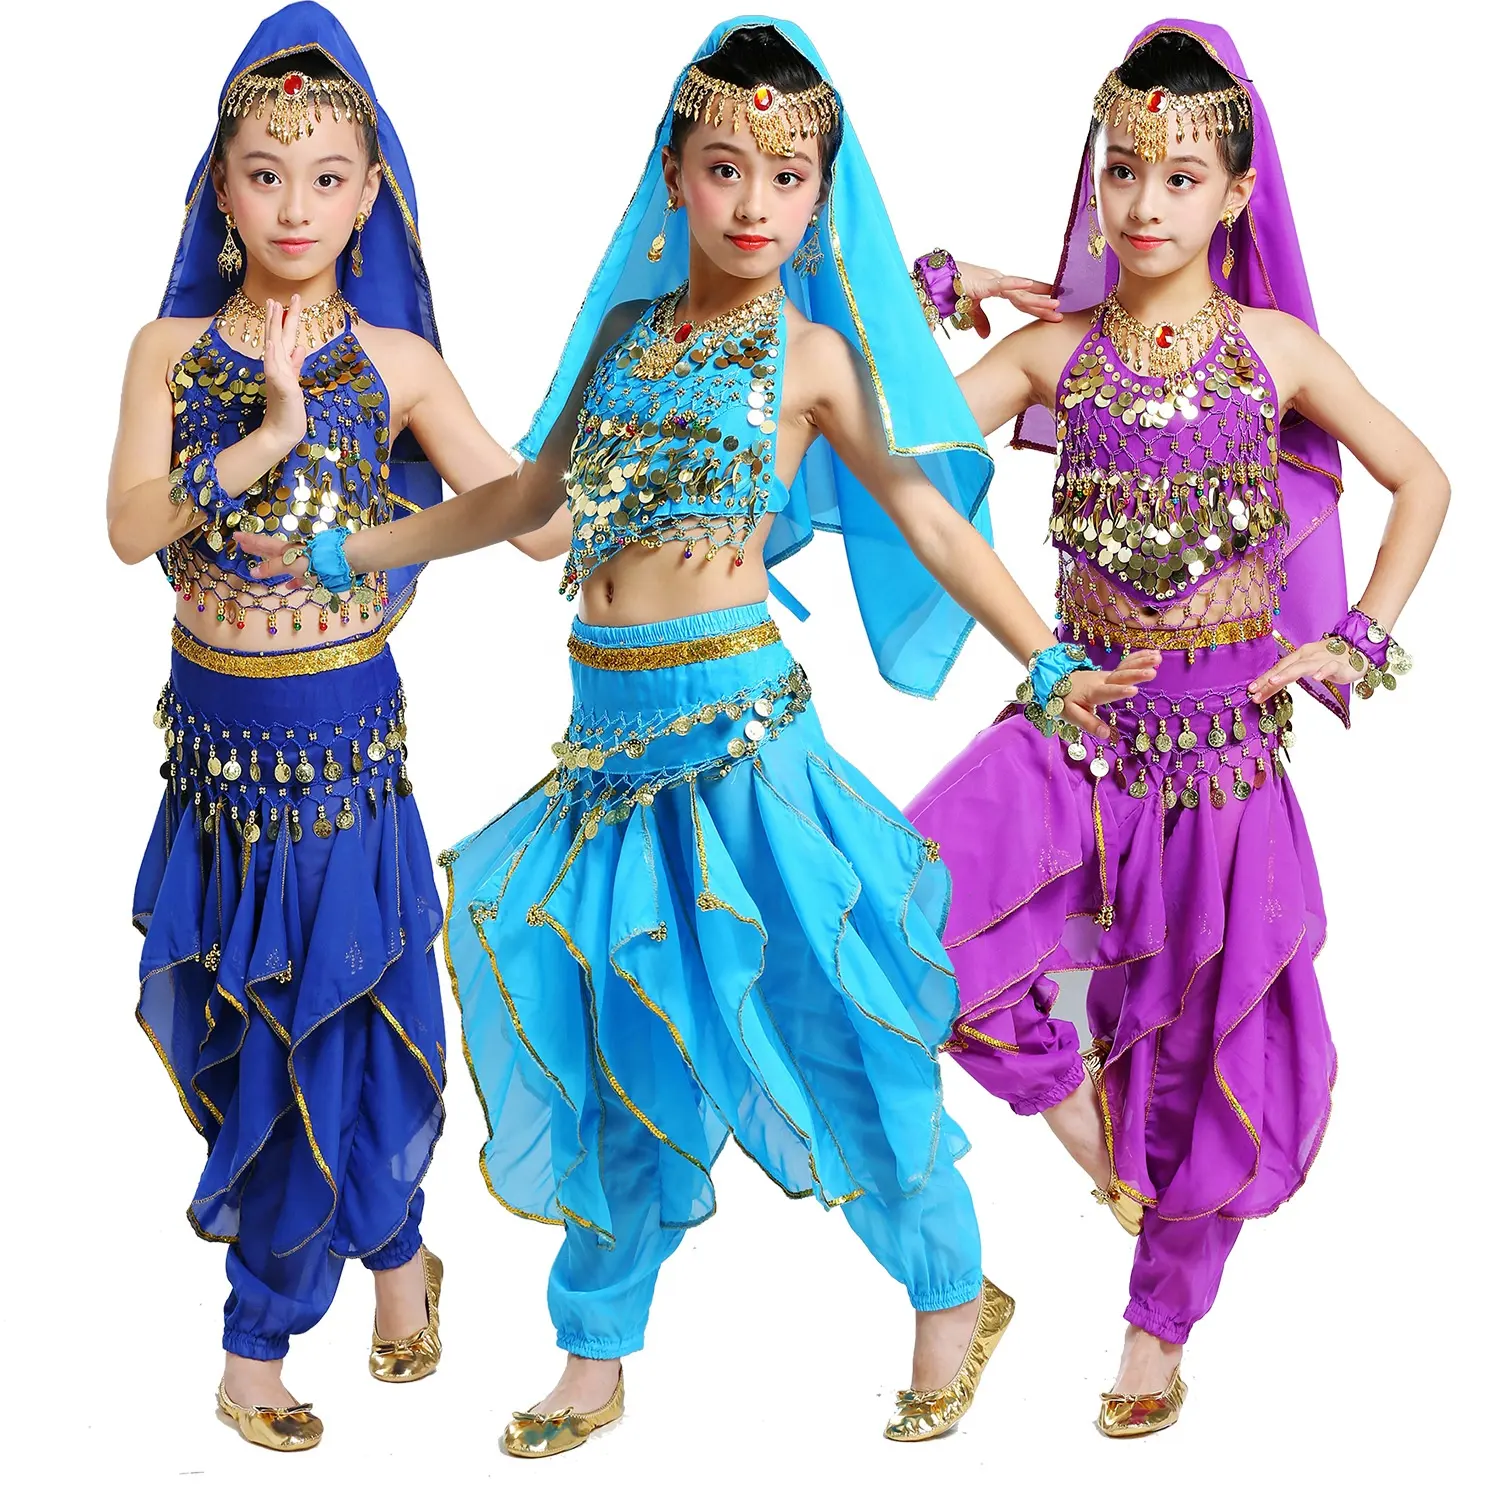 Ornamen Cosplay Bollywood kostum tari perut India anak perempuan putri anak-anak